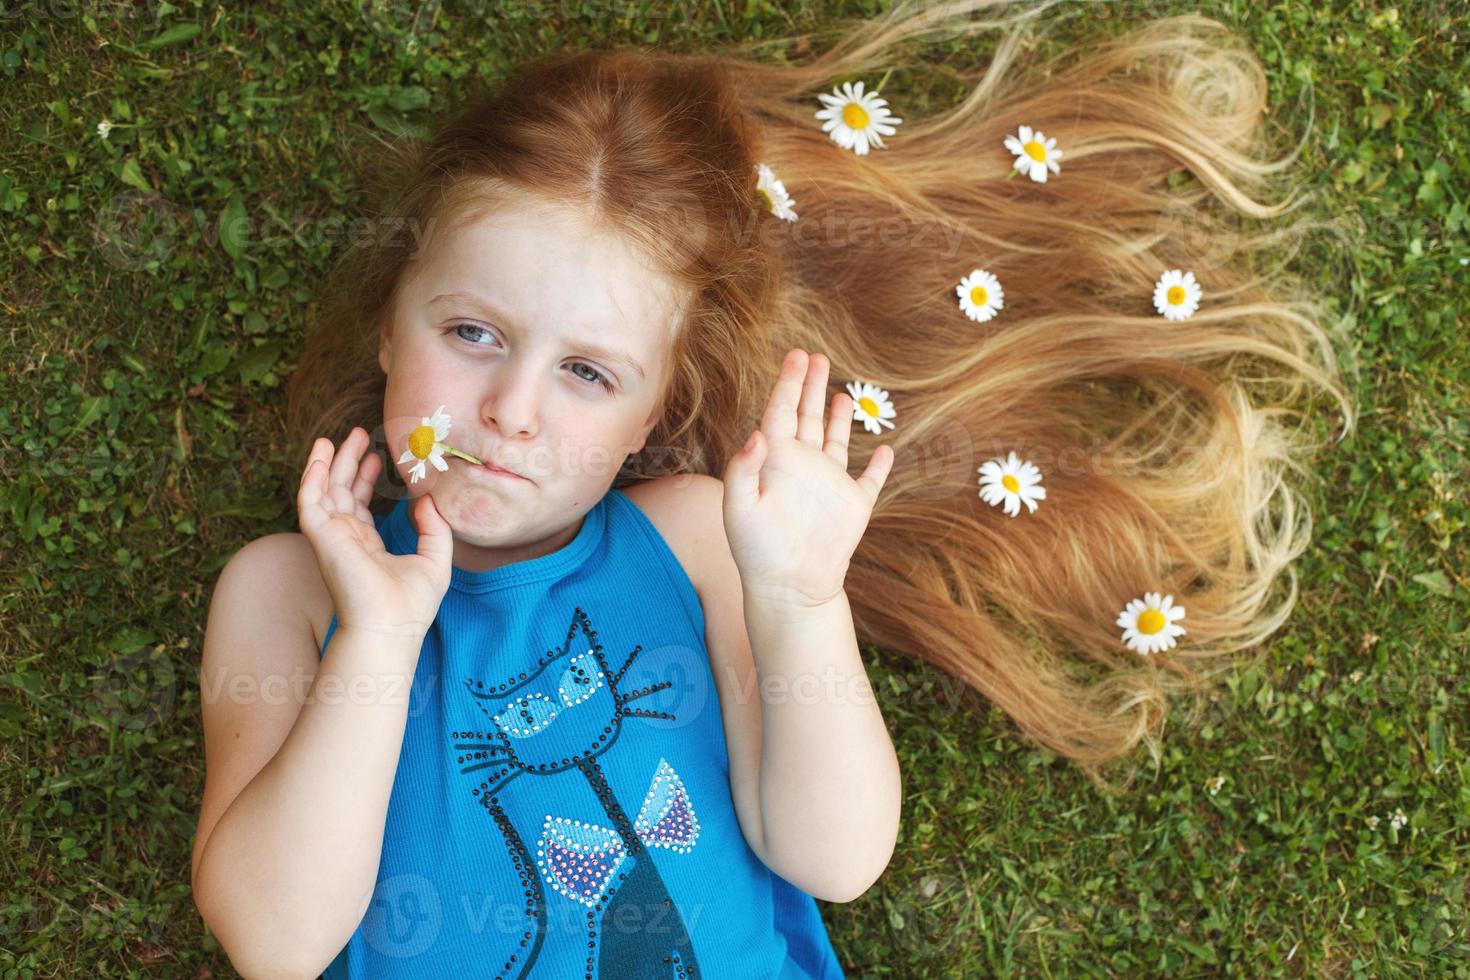 retrato de una hermosa niña con cabello rojo saludable con flores de manzanilla tiradas en la hierba foto